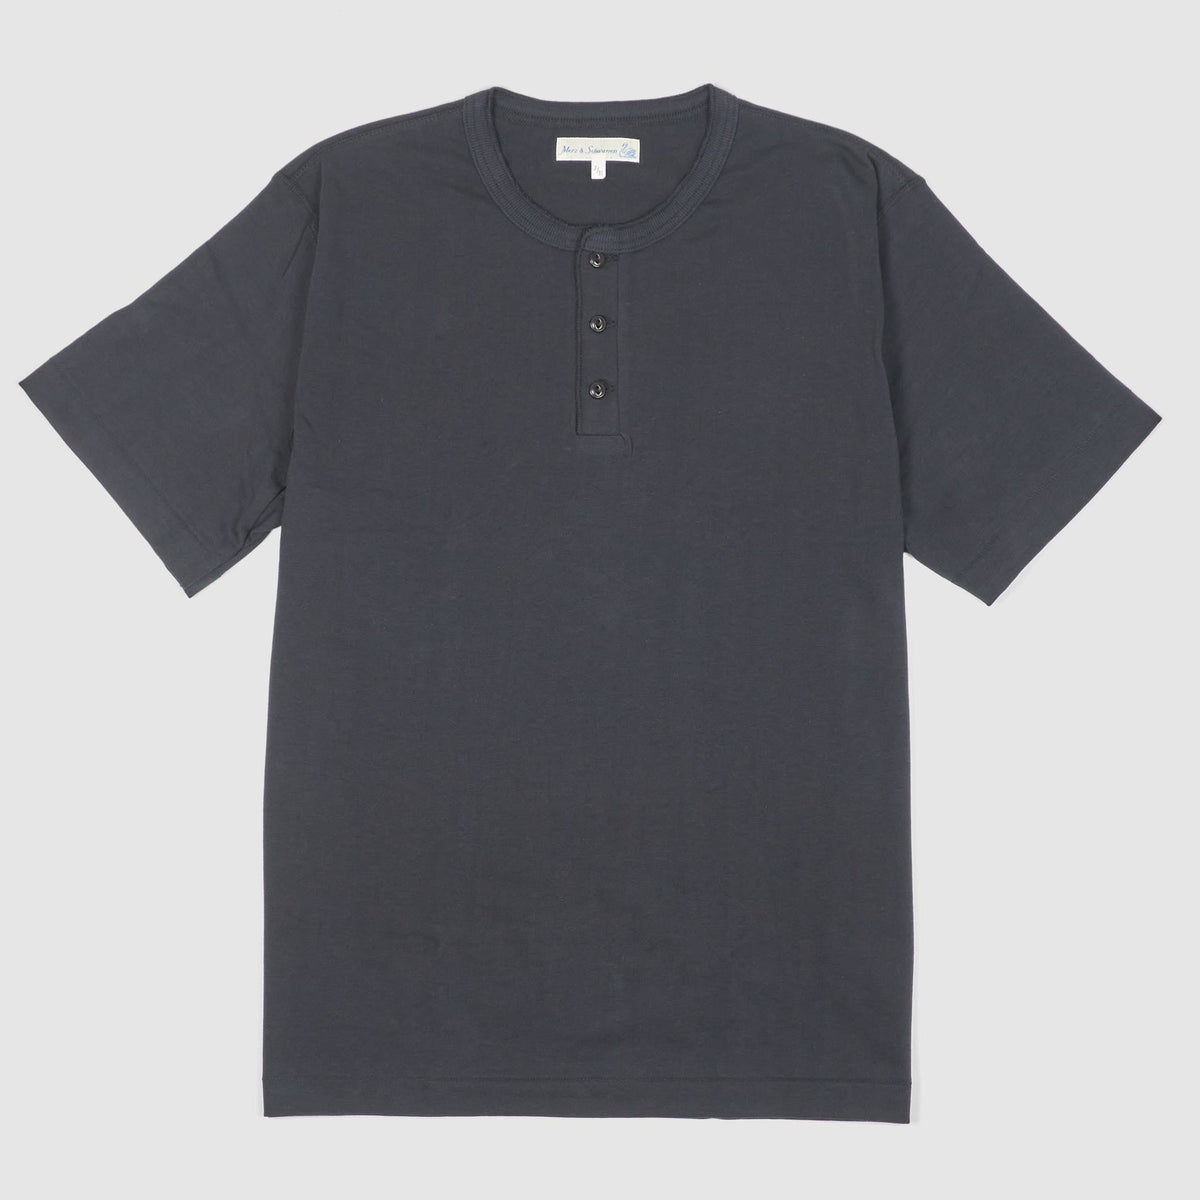 Merz b.Schwanen Loop Wheeler Short Sleeve Henley T-Shirt Charcoal